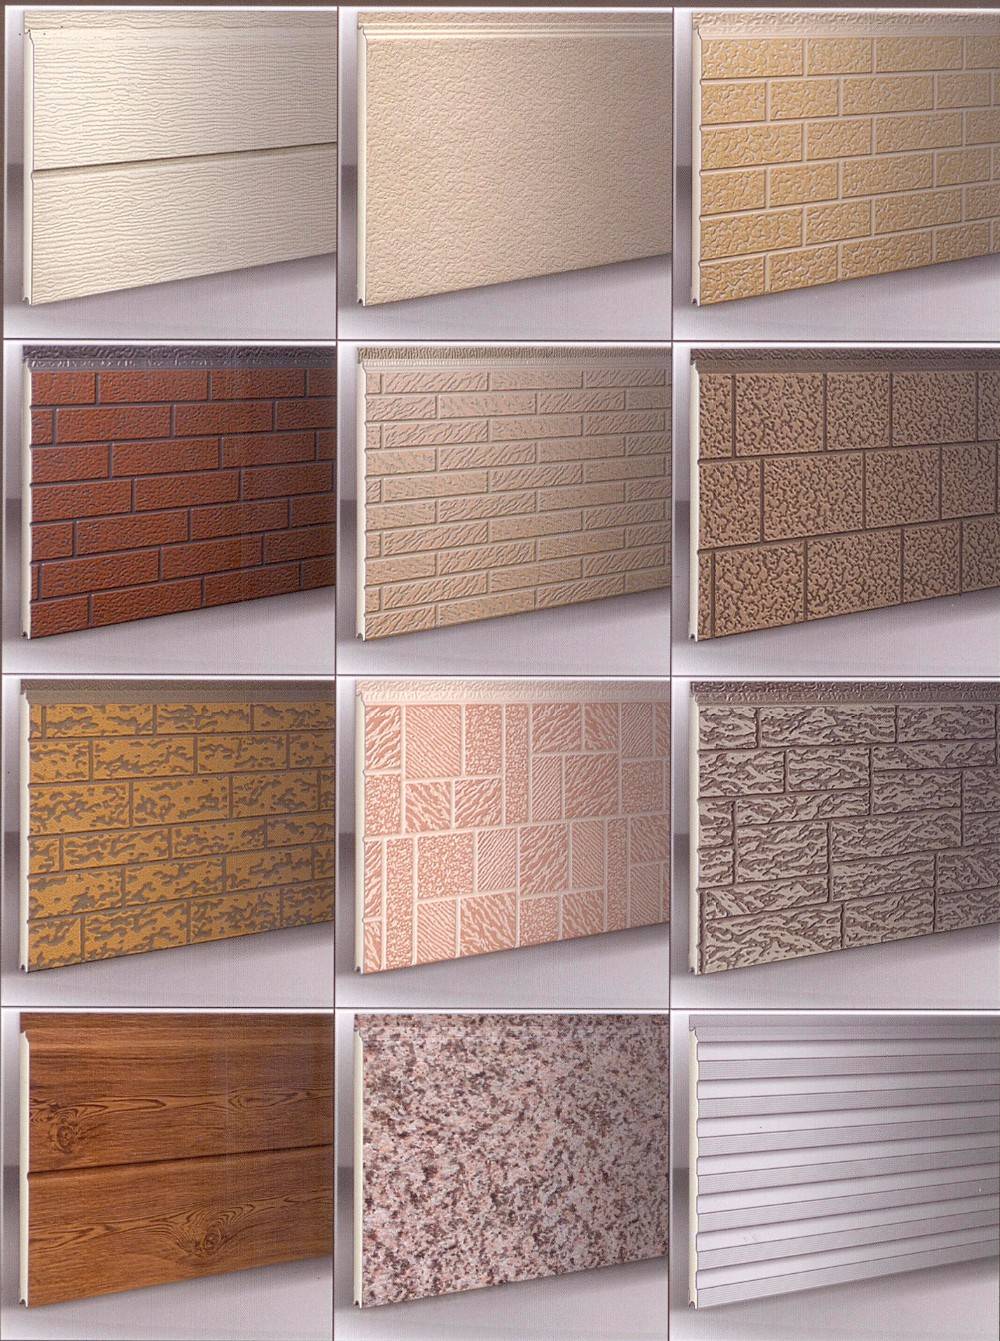 Стеновые товары. Декоративная панель 1.59.001. Металлические сэндвич-панели Стенолит. Wall cladding панель стеновая. Сэндвич панели стеновые отделочные 30 мм.